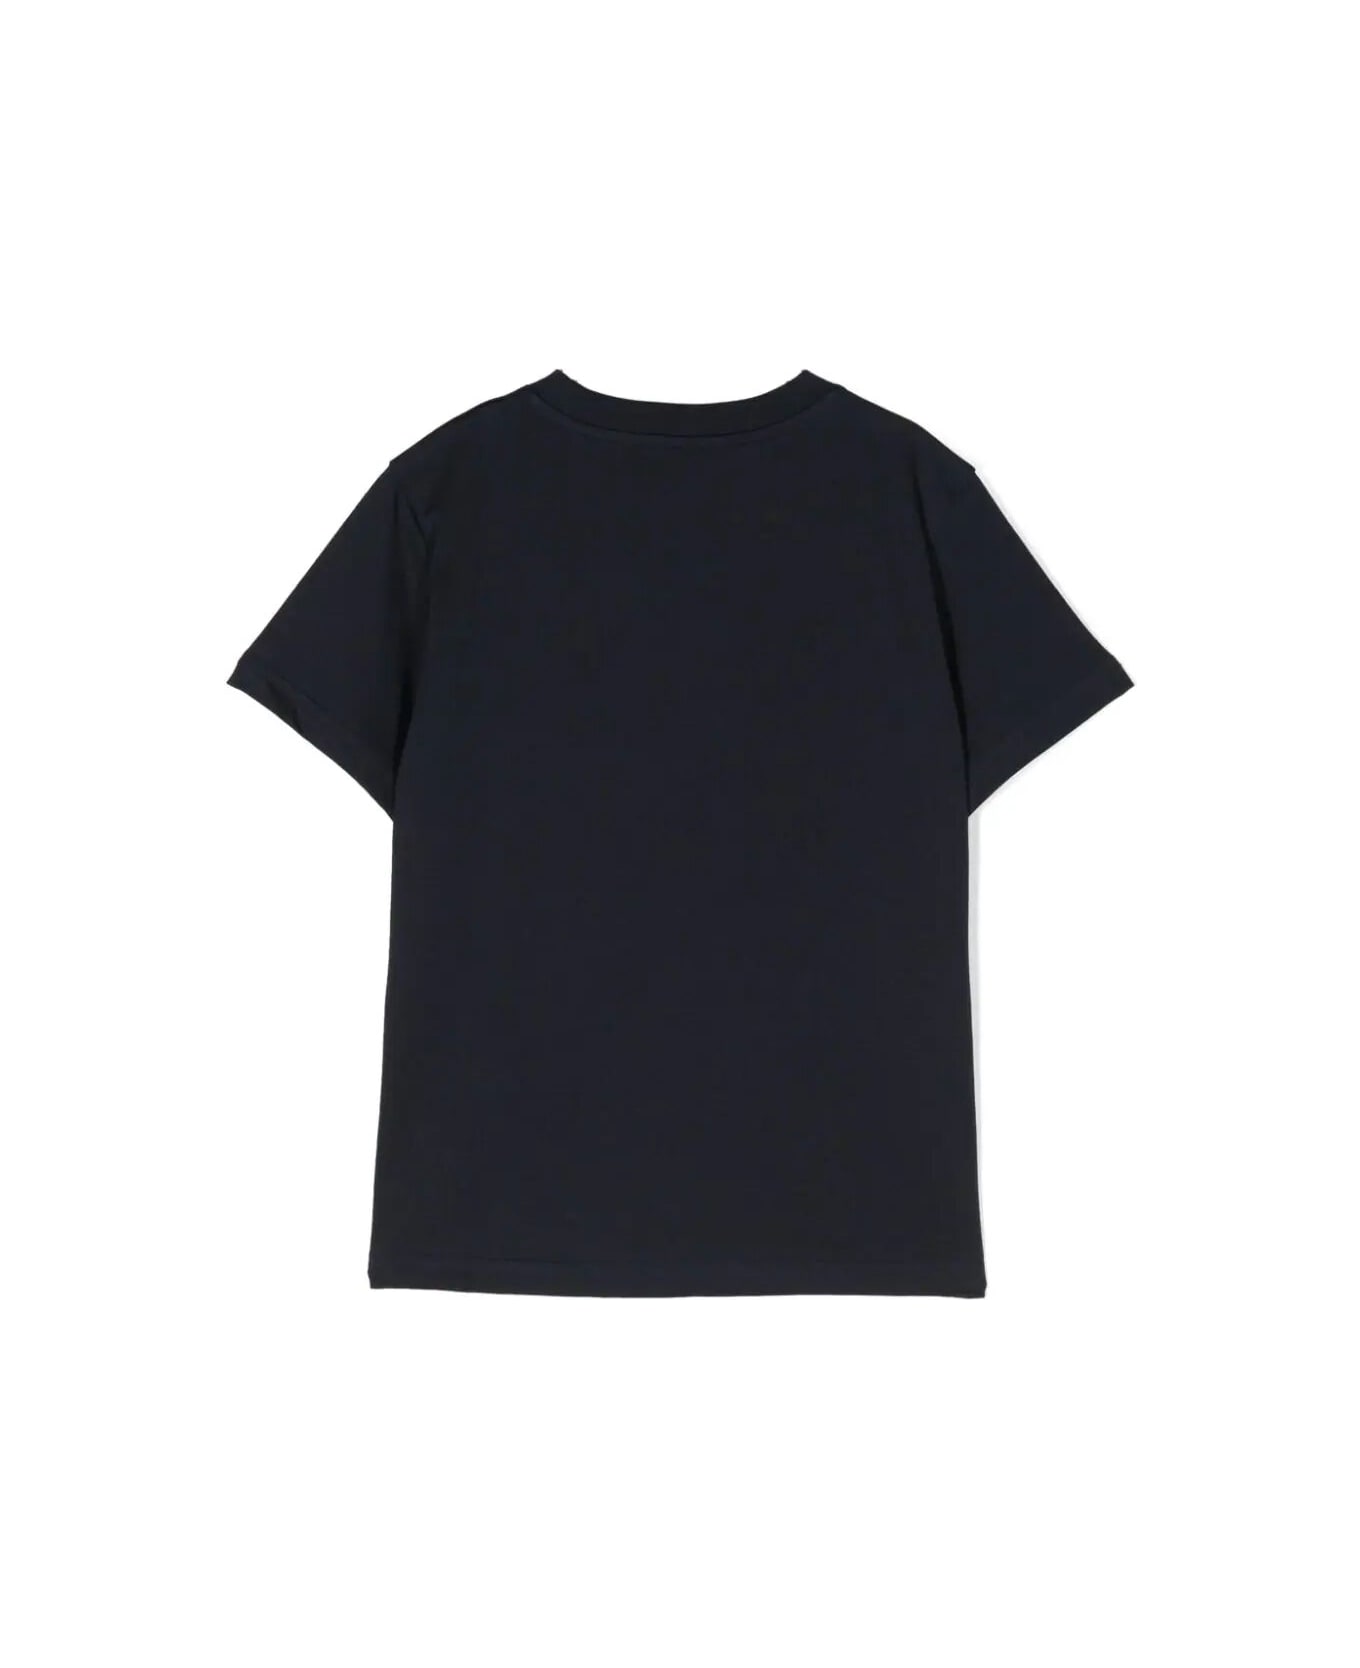 Moncler Ss T-shirt - Blue